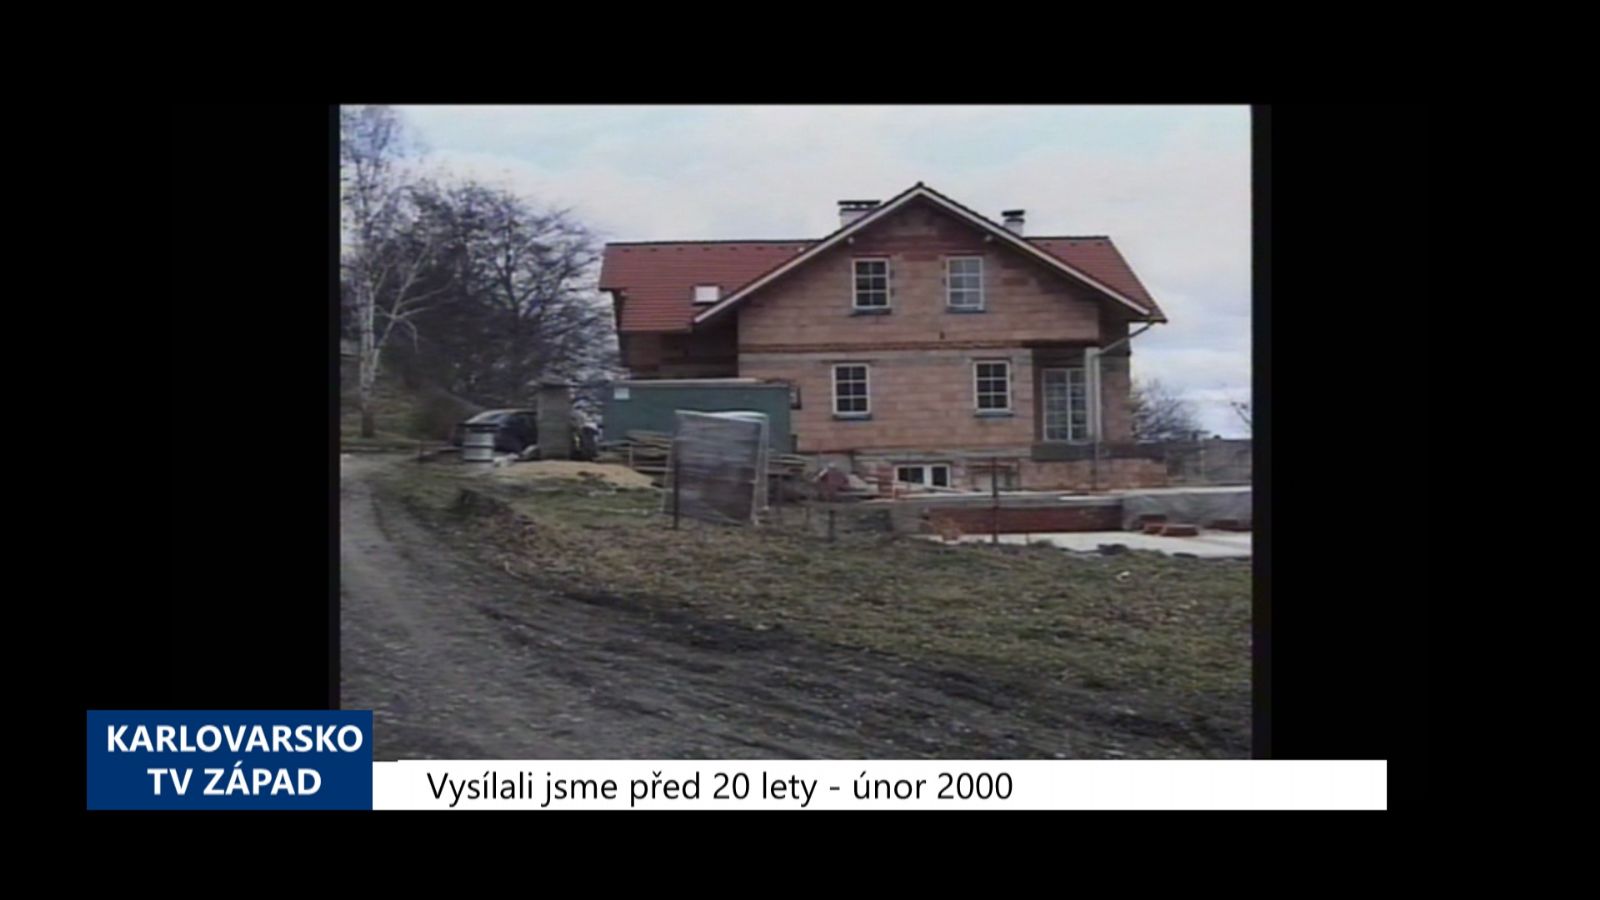 2000 – Cheb: Město na výstavbu bytů vyčlenilo 8 milionů (TV Západ)